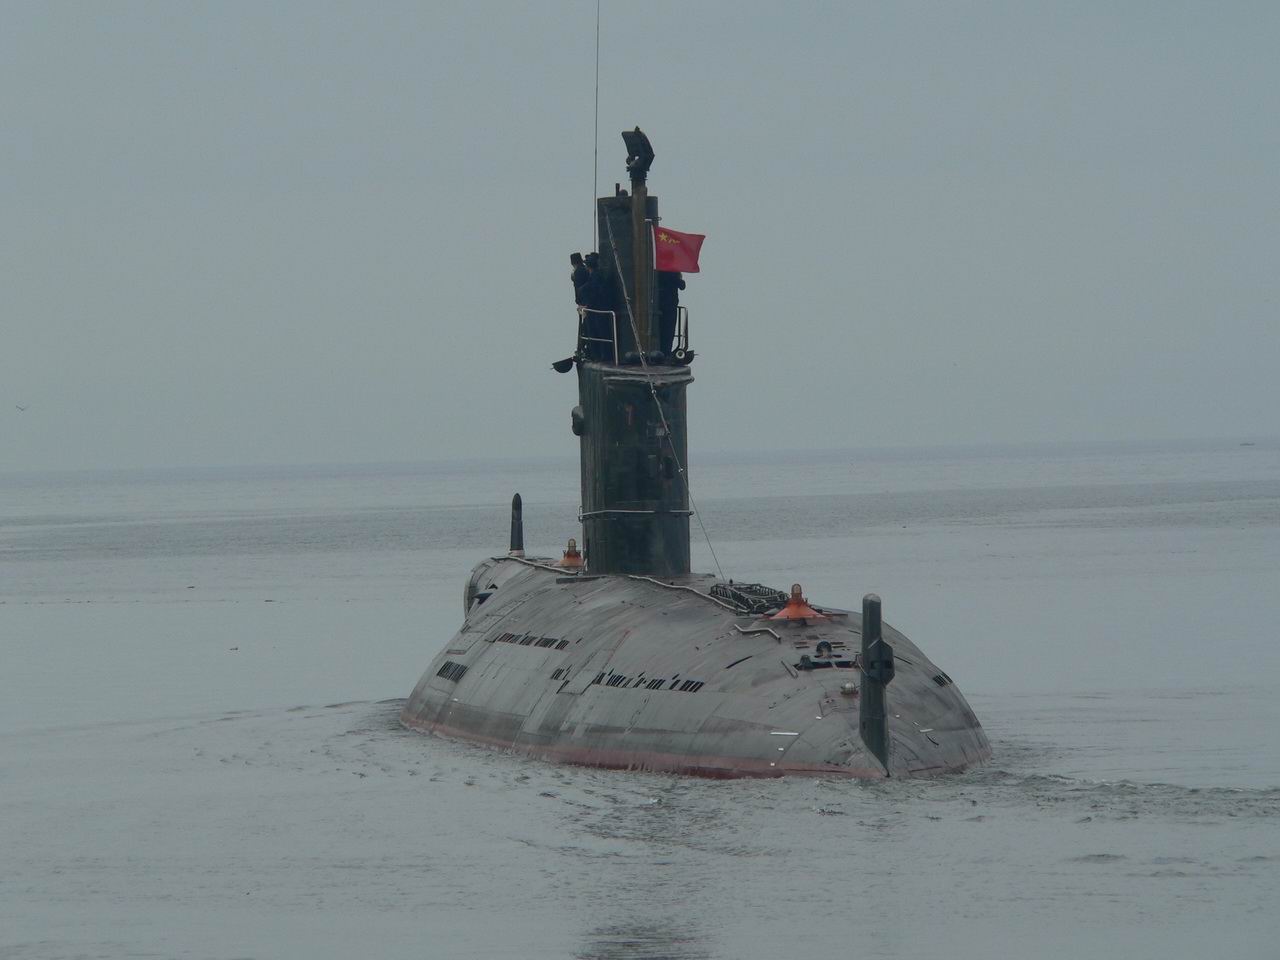 035潜艇事故图片